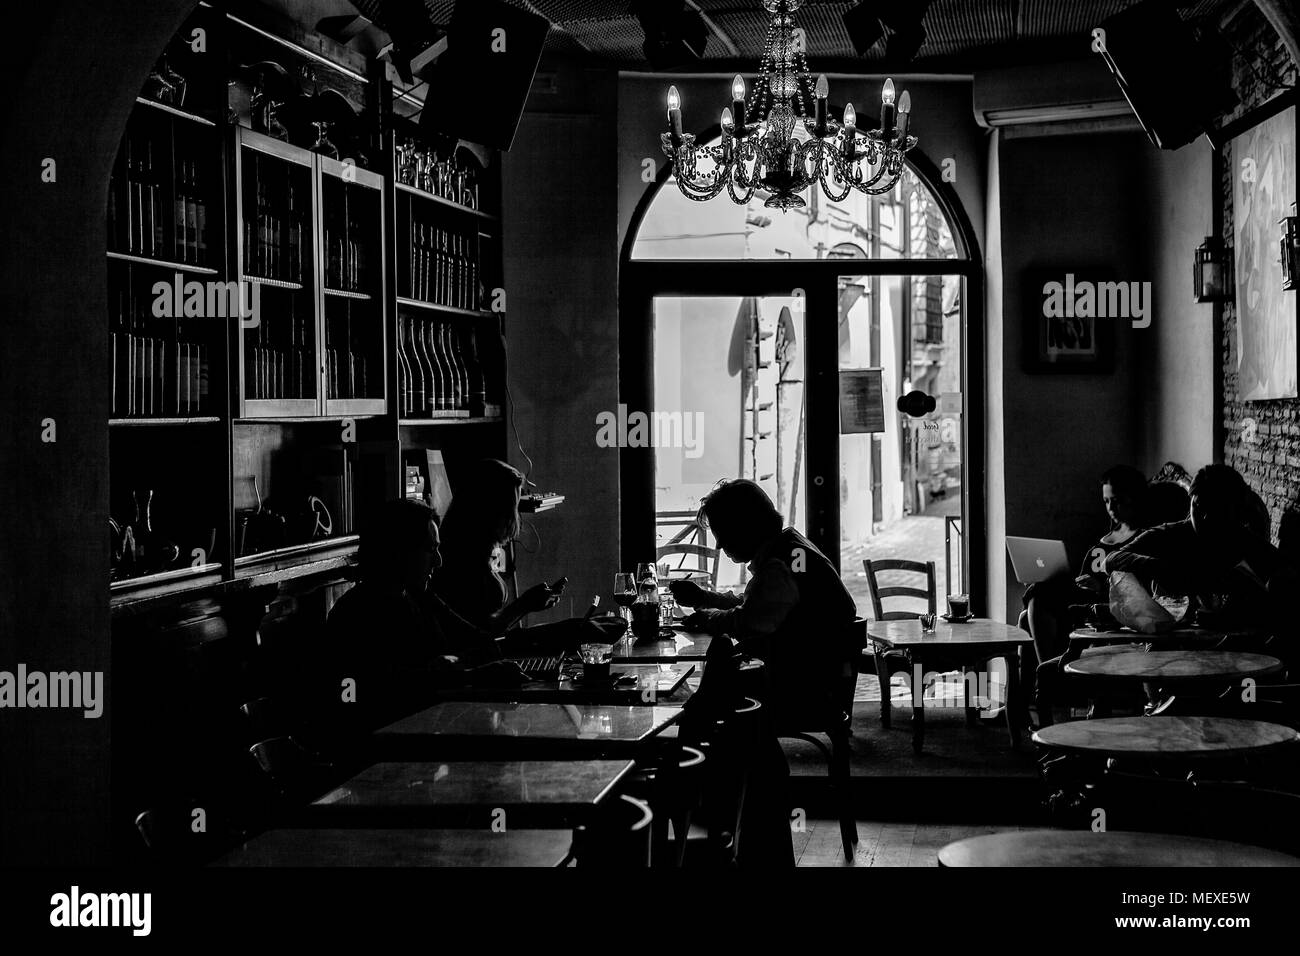 Dunkle moody Innenraum aus einem Cafe mit Menschen sassen an den Tischen Stockfoto